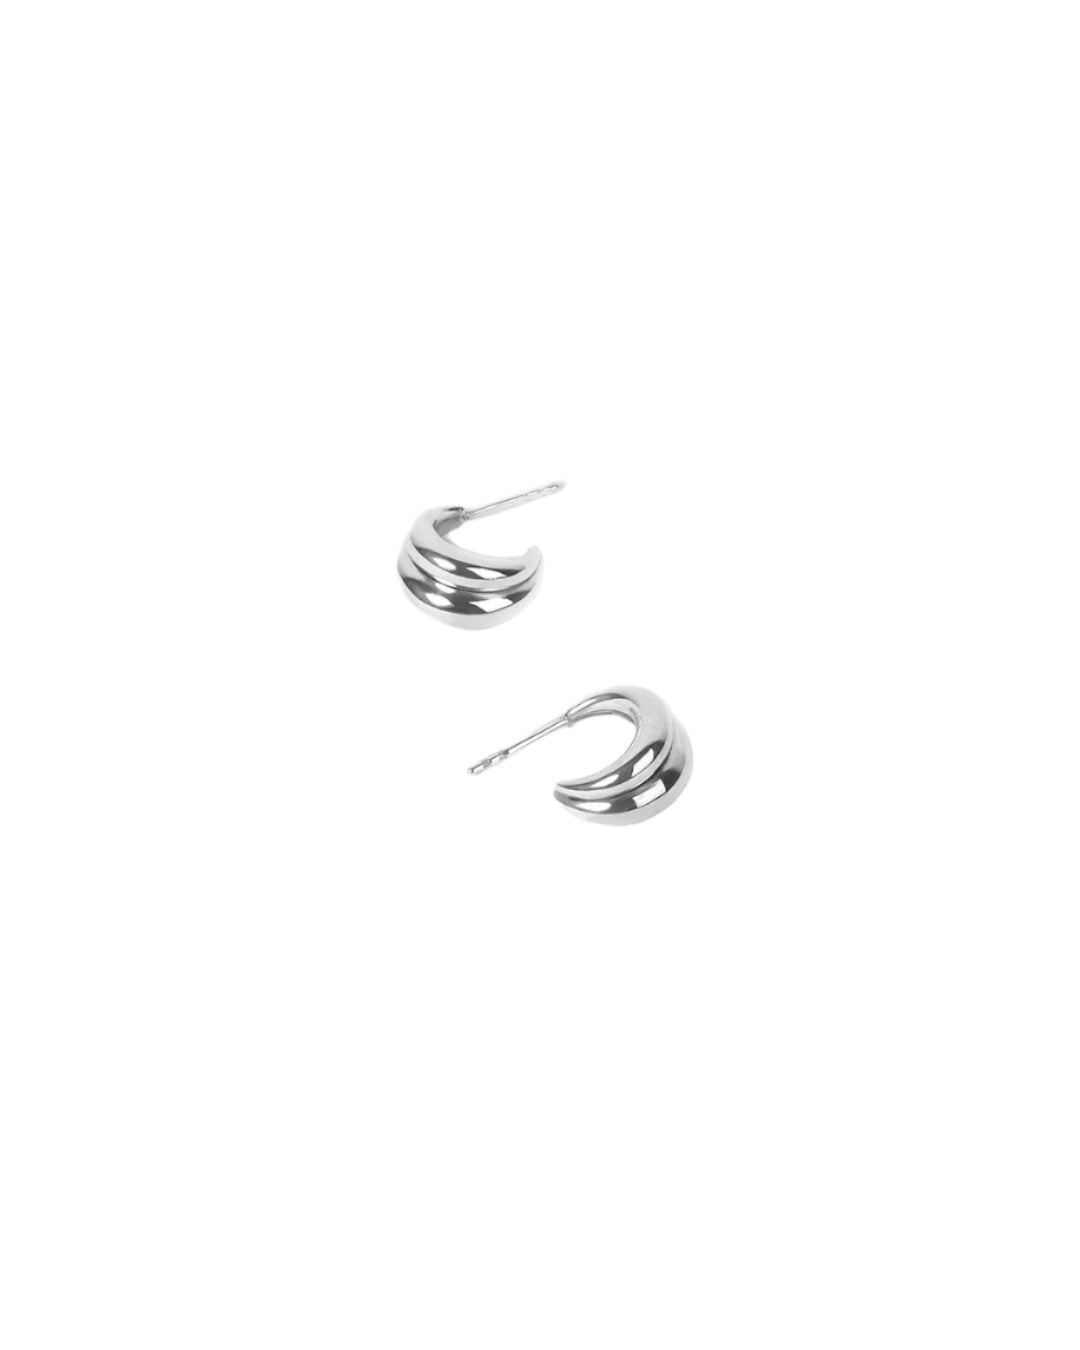 Handmade simple silver hoops earrings - NEEO Tide